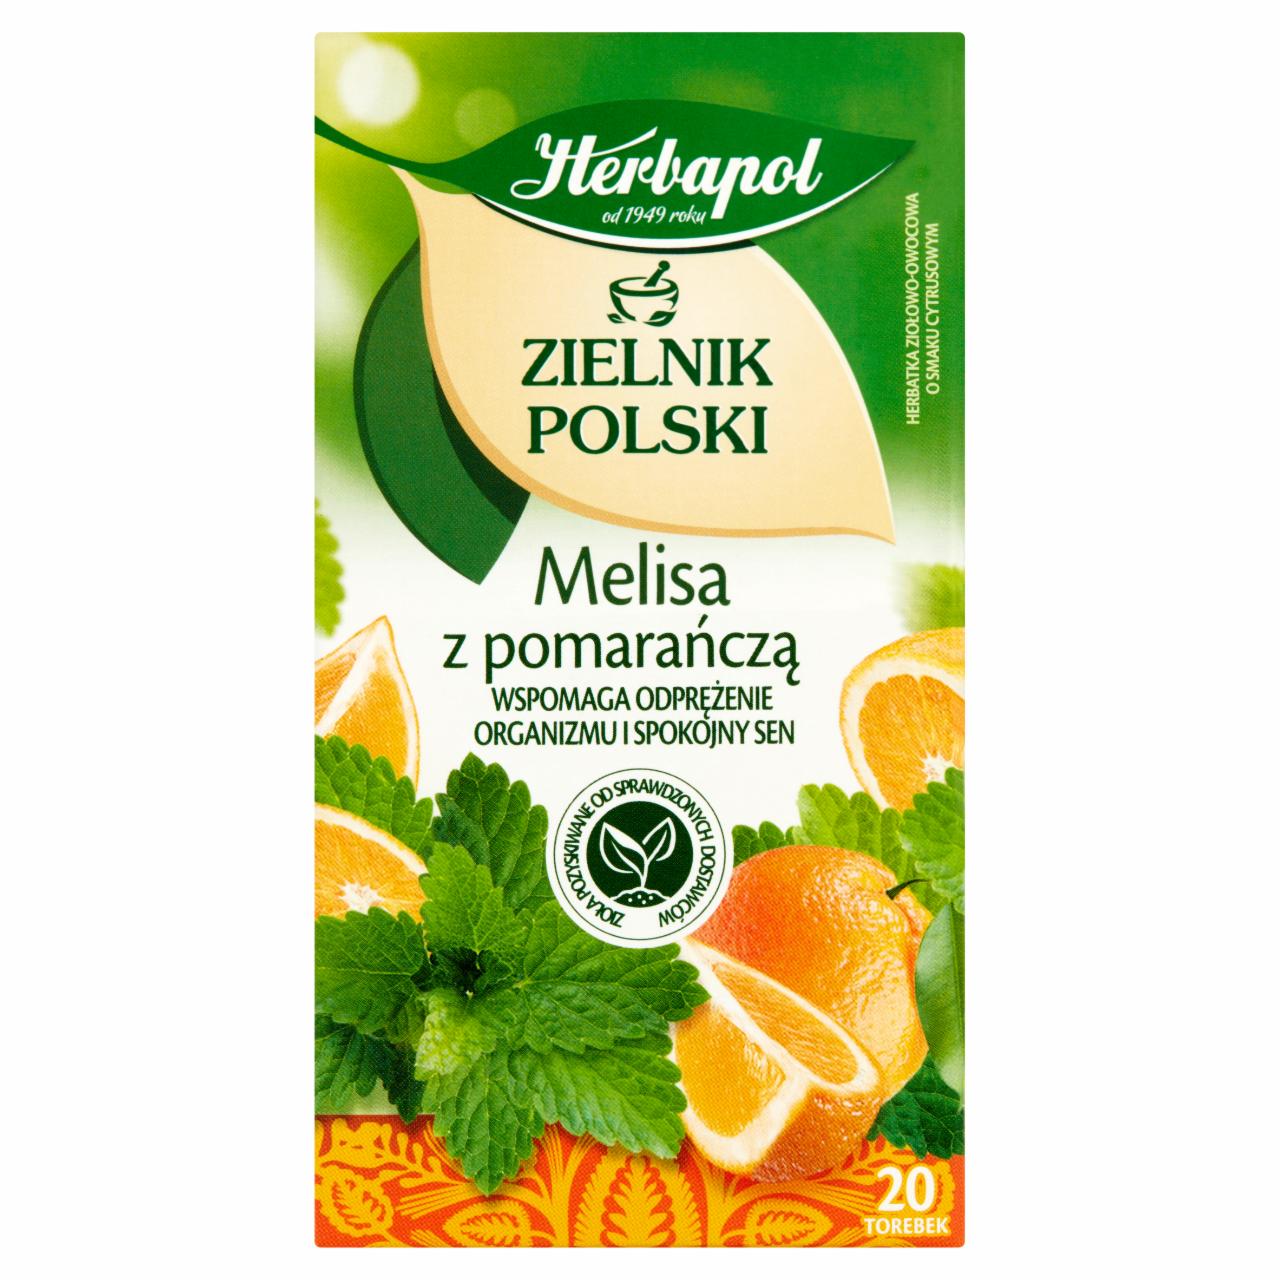 Zdjęcia - Zielnik Polski Herbatka ziołowo-owocowa melisa z pomarańczą 35 g (20 x 1,75 g) Herbapol